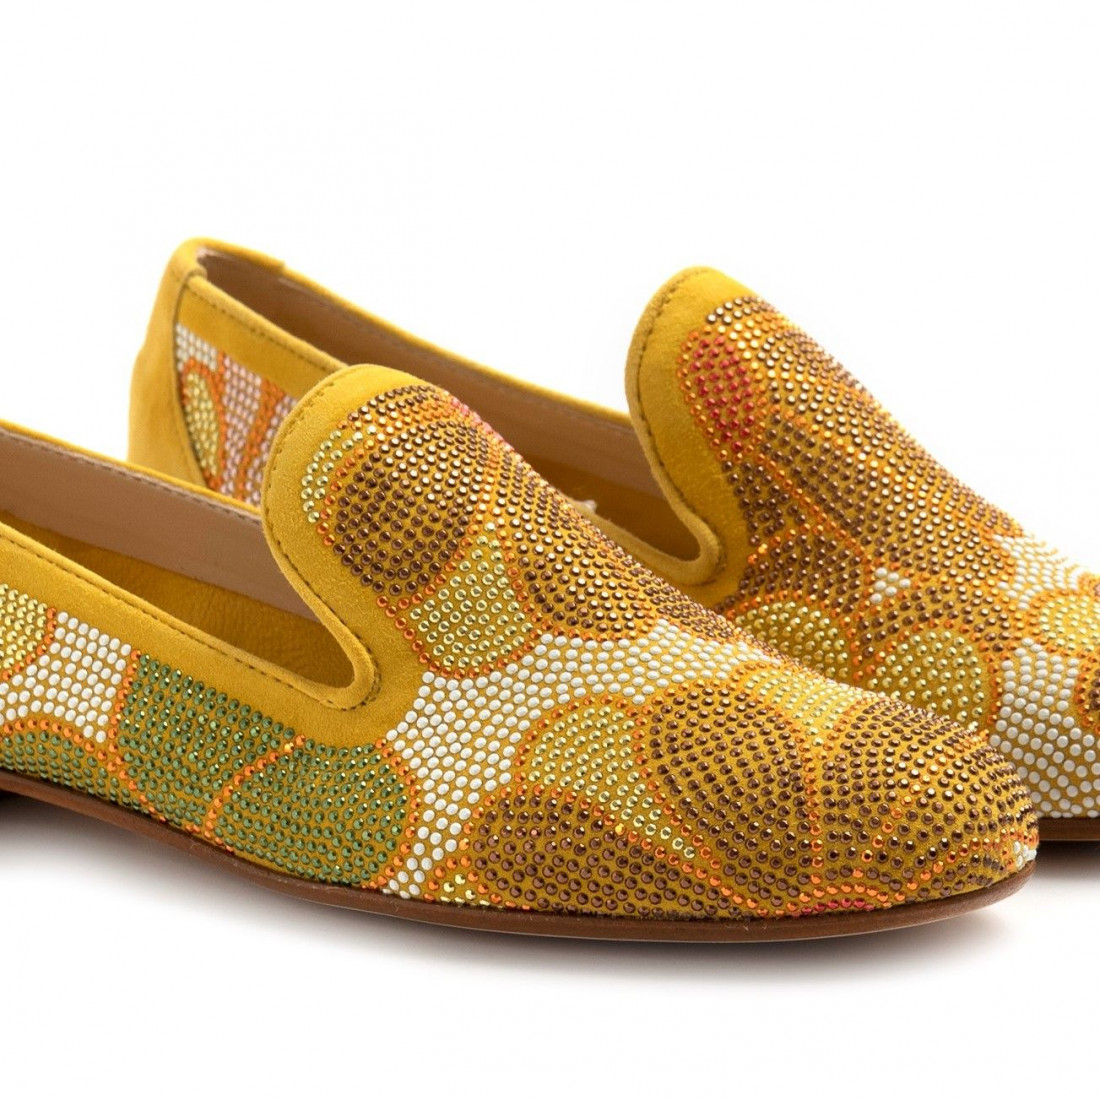 Chaussure Belle Vie modèle Via Danesi jaune avec strass colorés